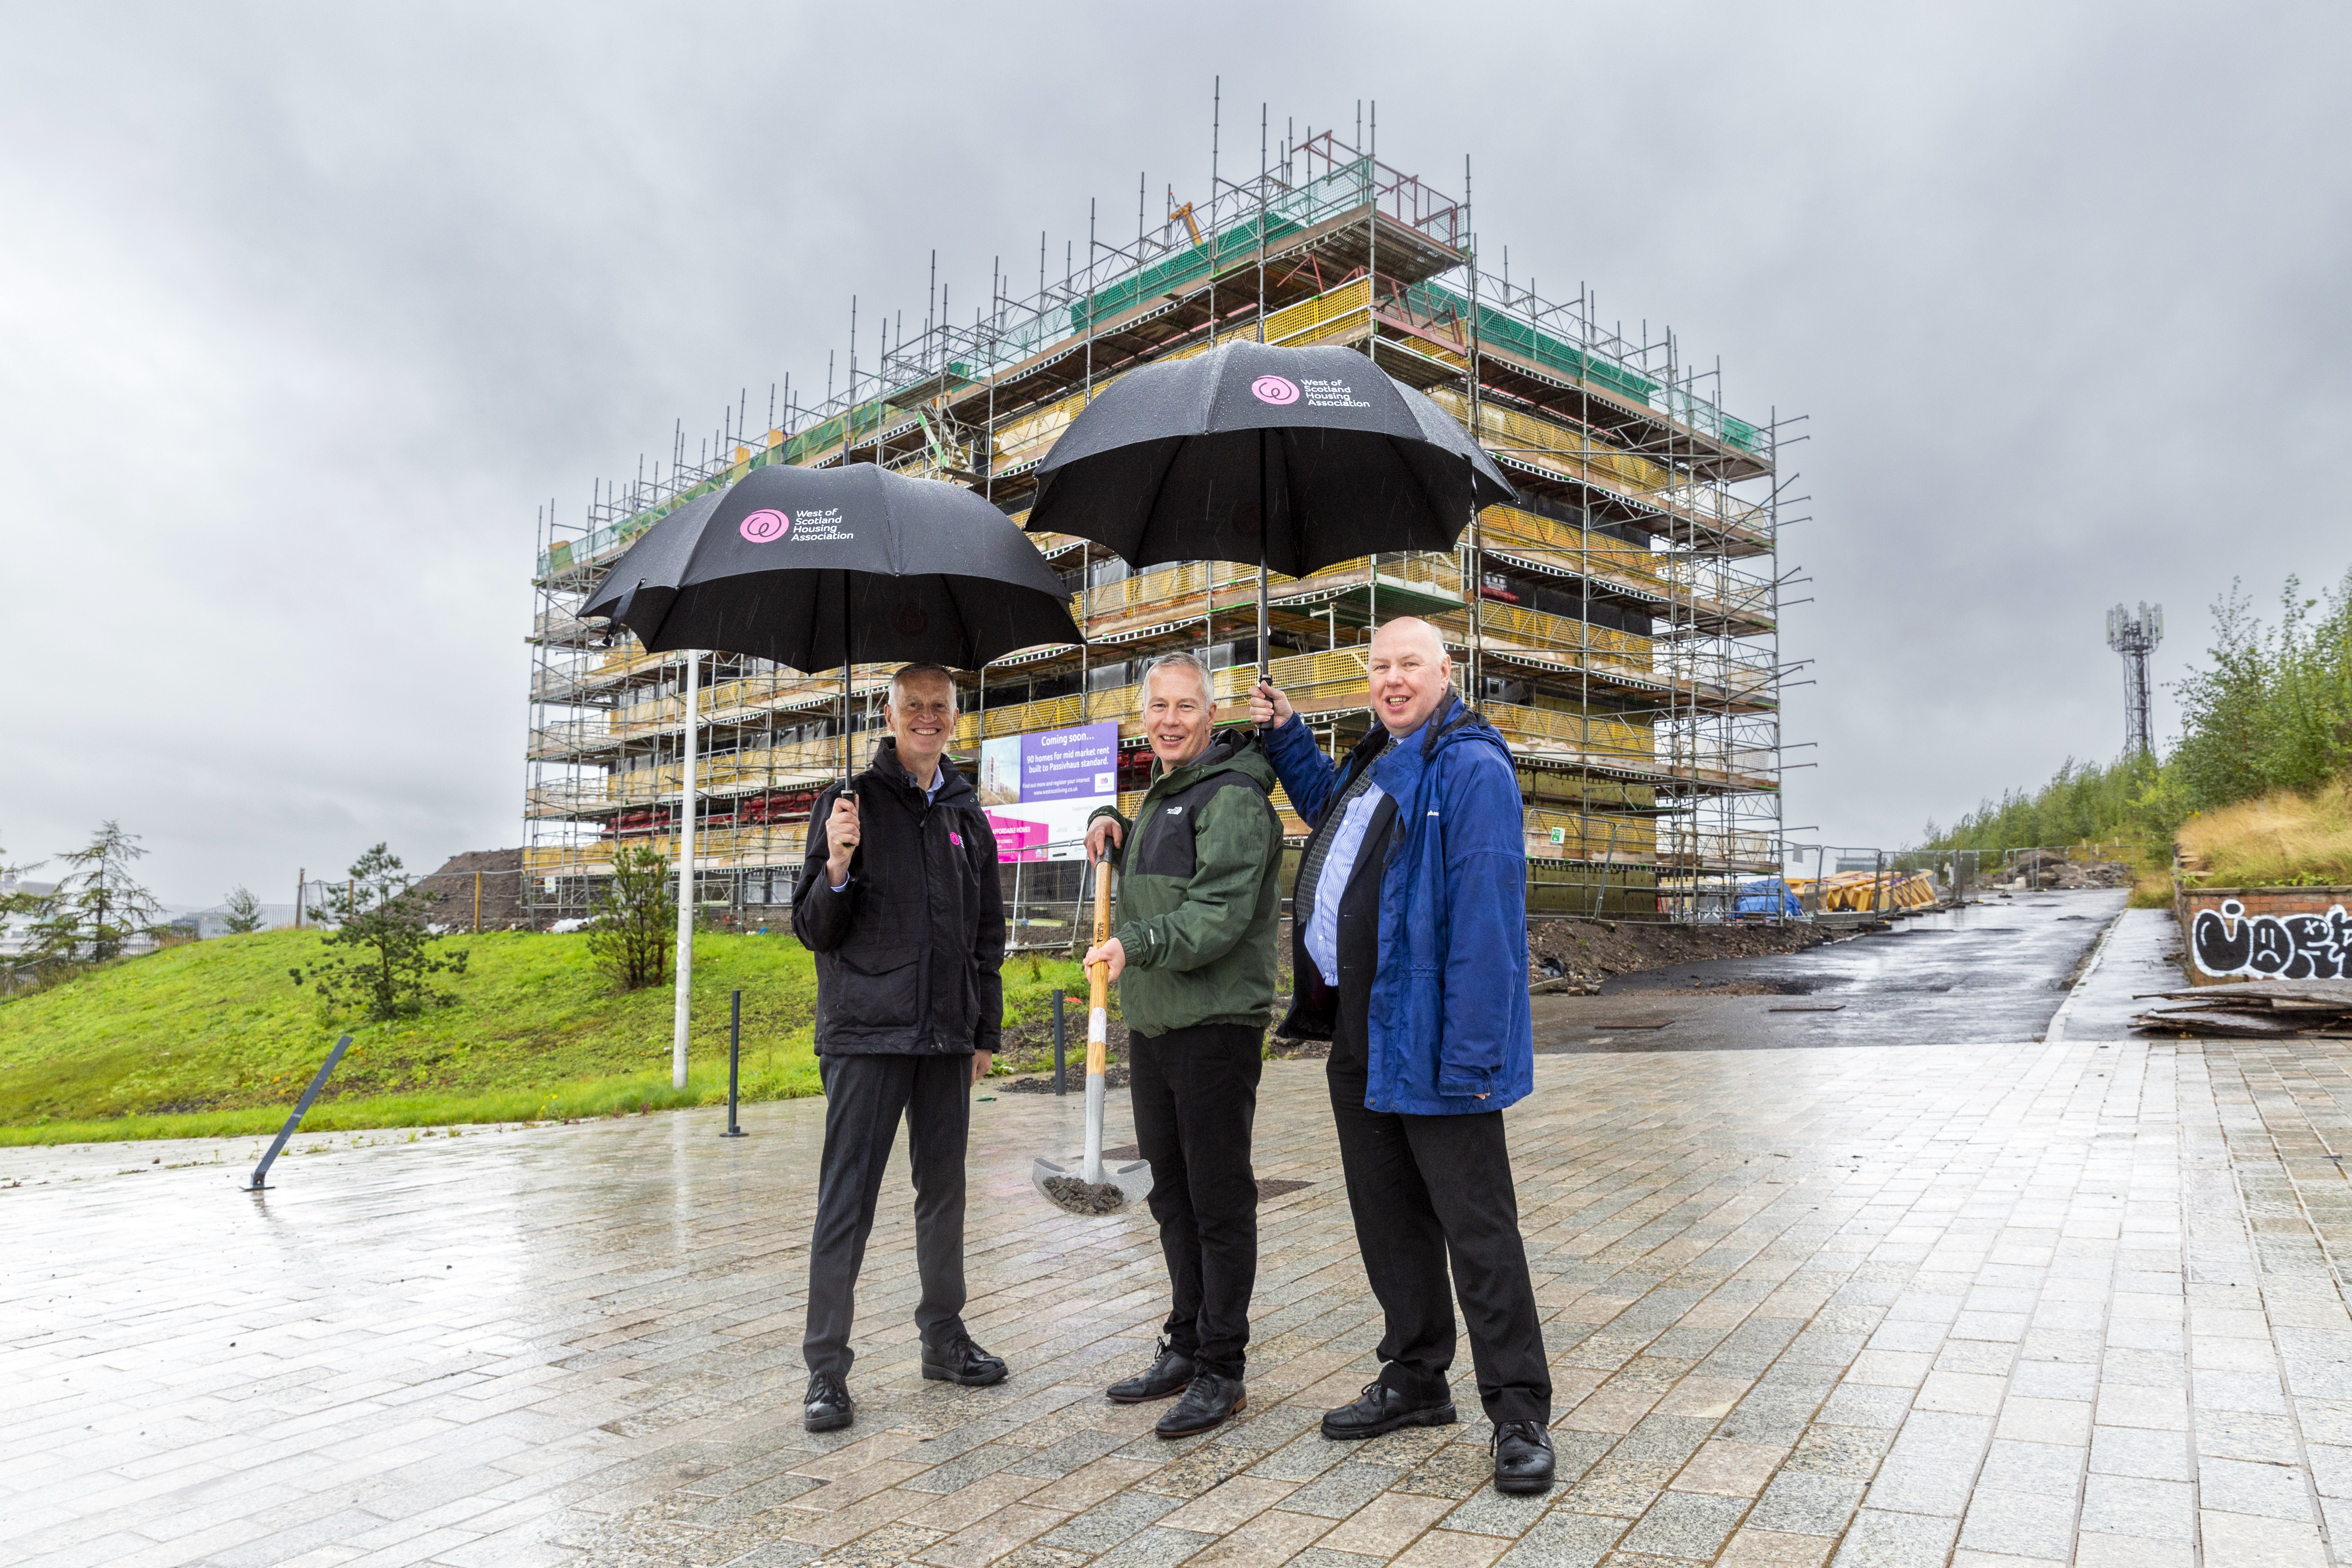 WSHA begins work on Scotland's largest Passivhaus development